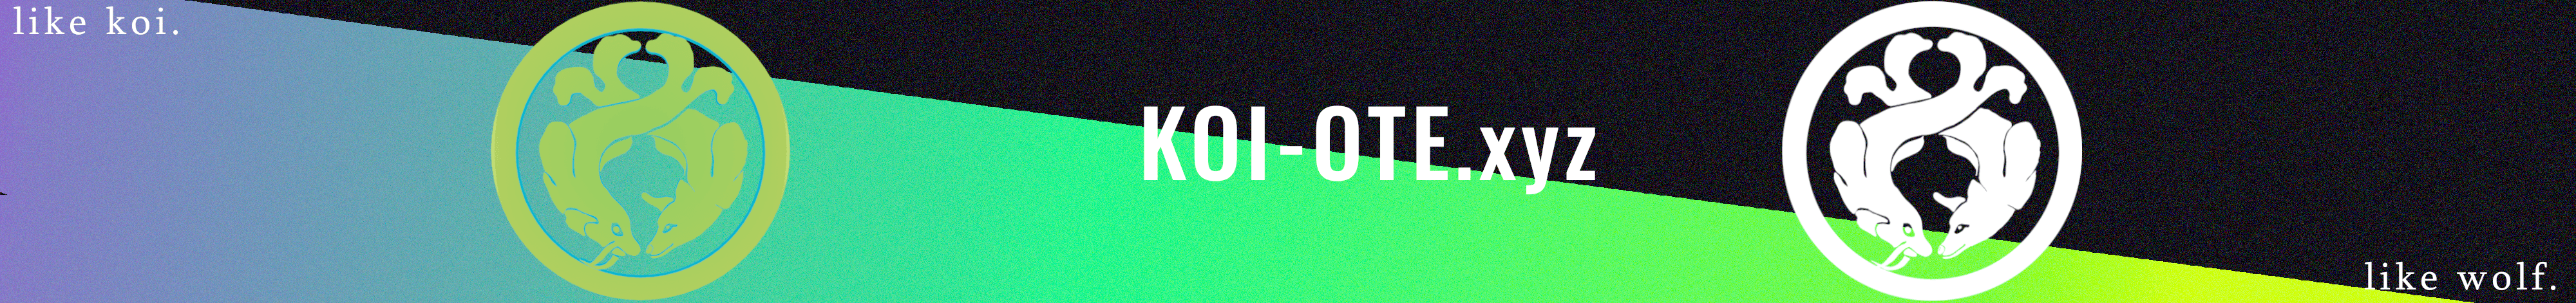 koi-ote banner